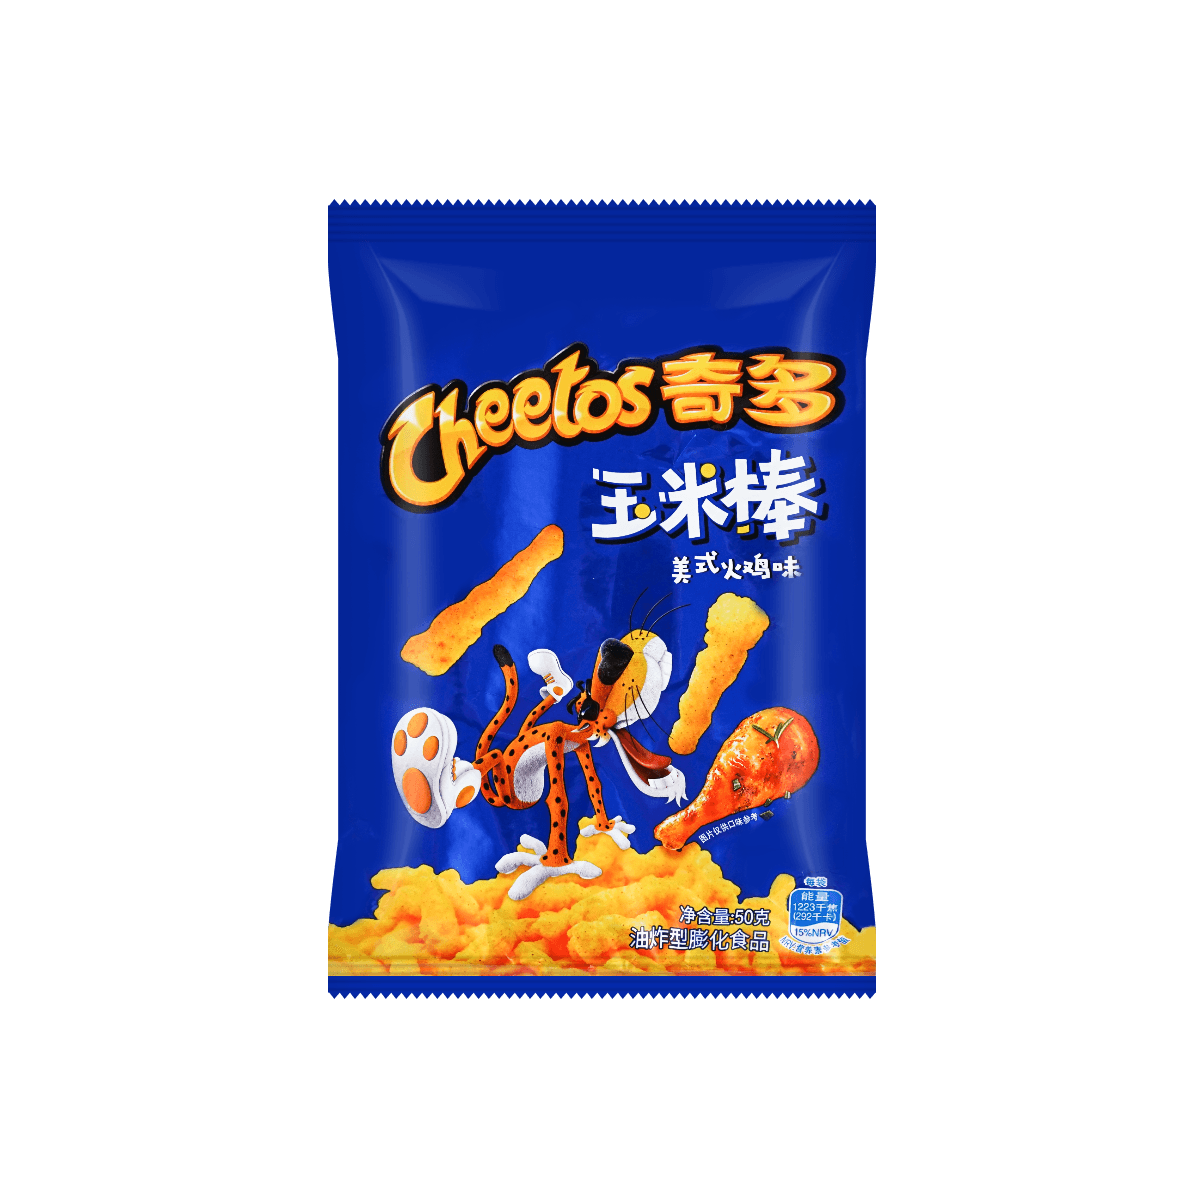 Cheetos Turkey Flavored cheese snack